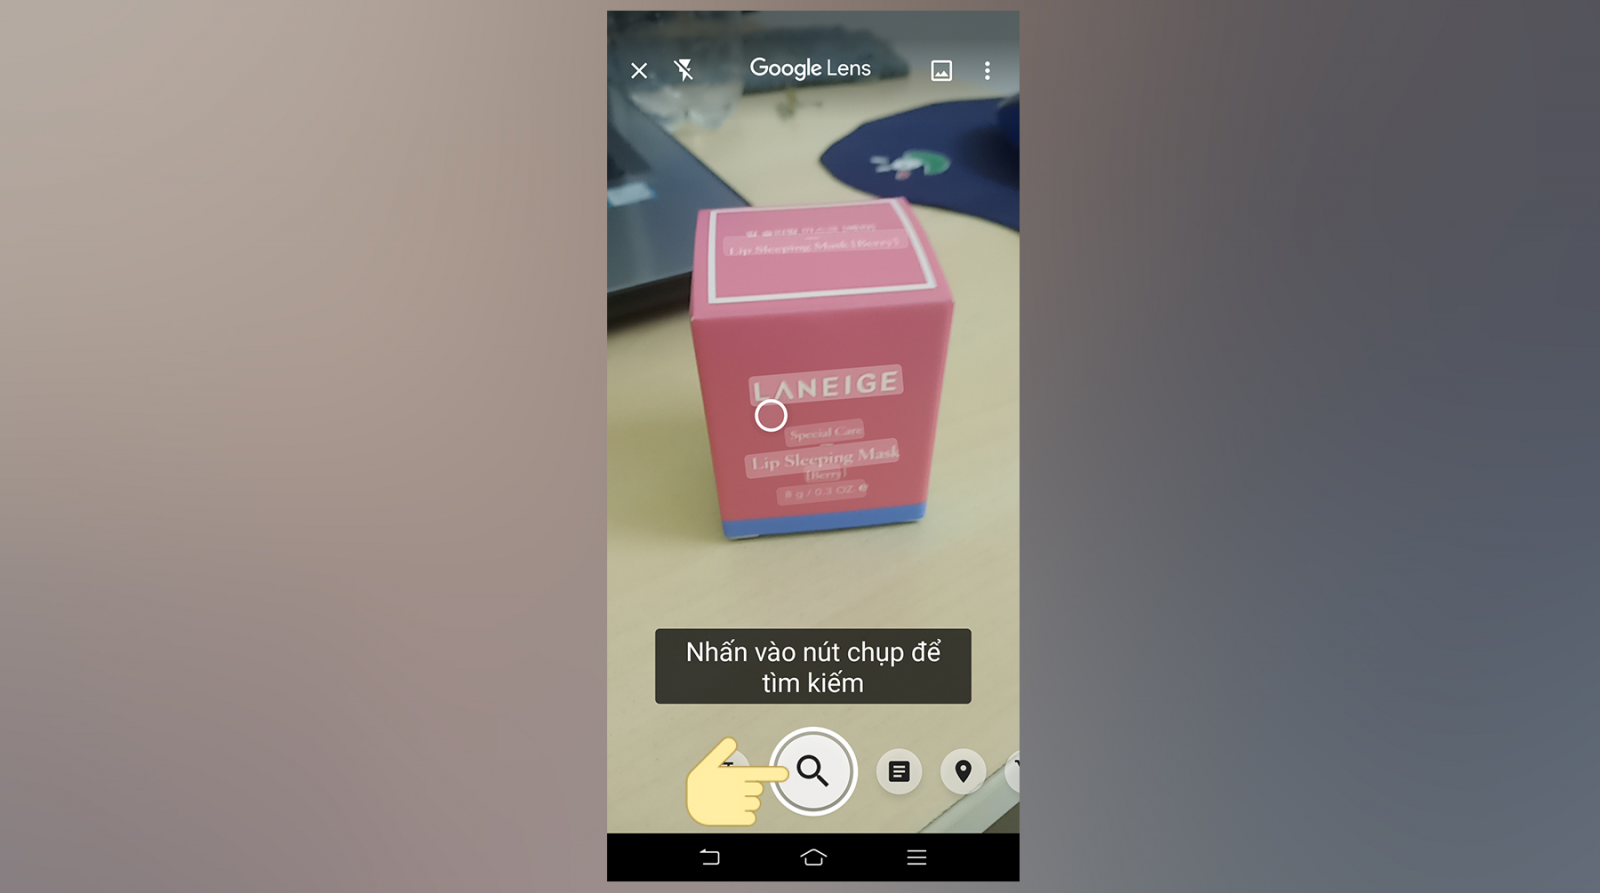 Google Ống Kính là một trong khí cụ khiến cho bạn thám thính kiếm vấn đề hình hình ảnh nhanh gọn lẹ bên trên điện thoại cảm ứng thông minh Android